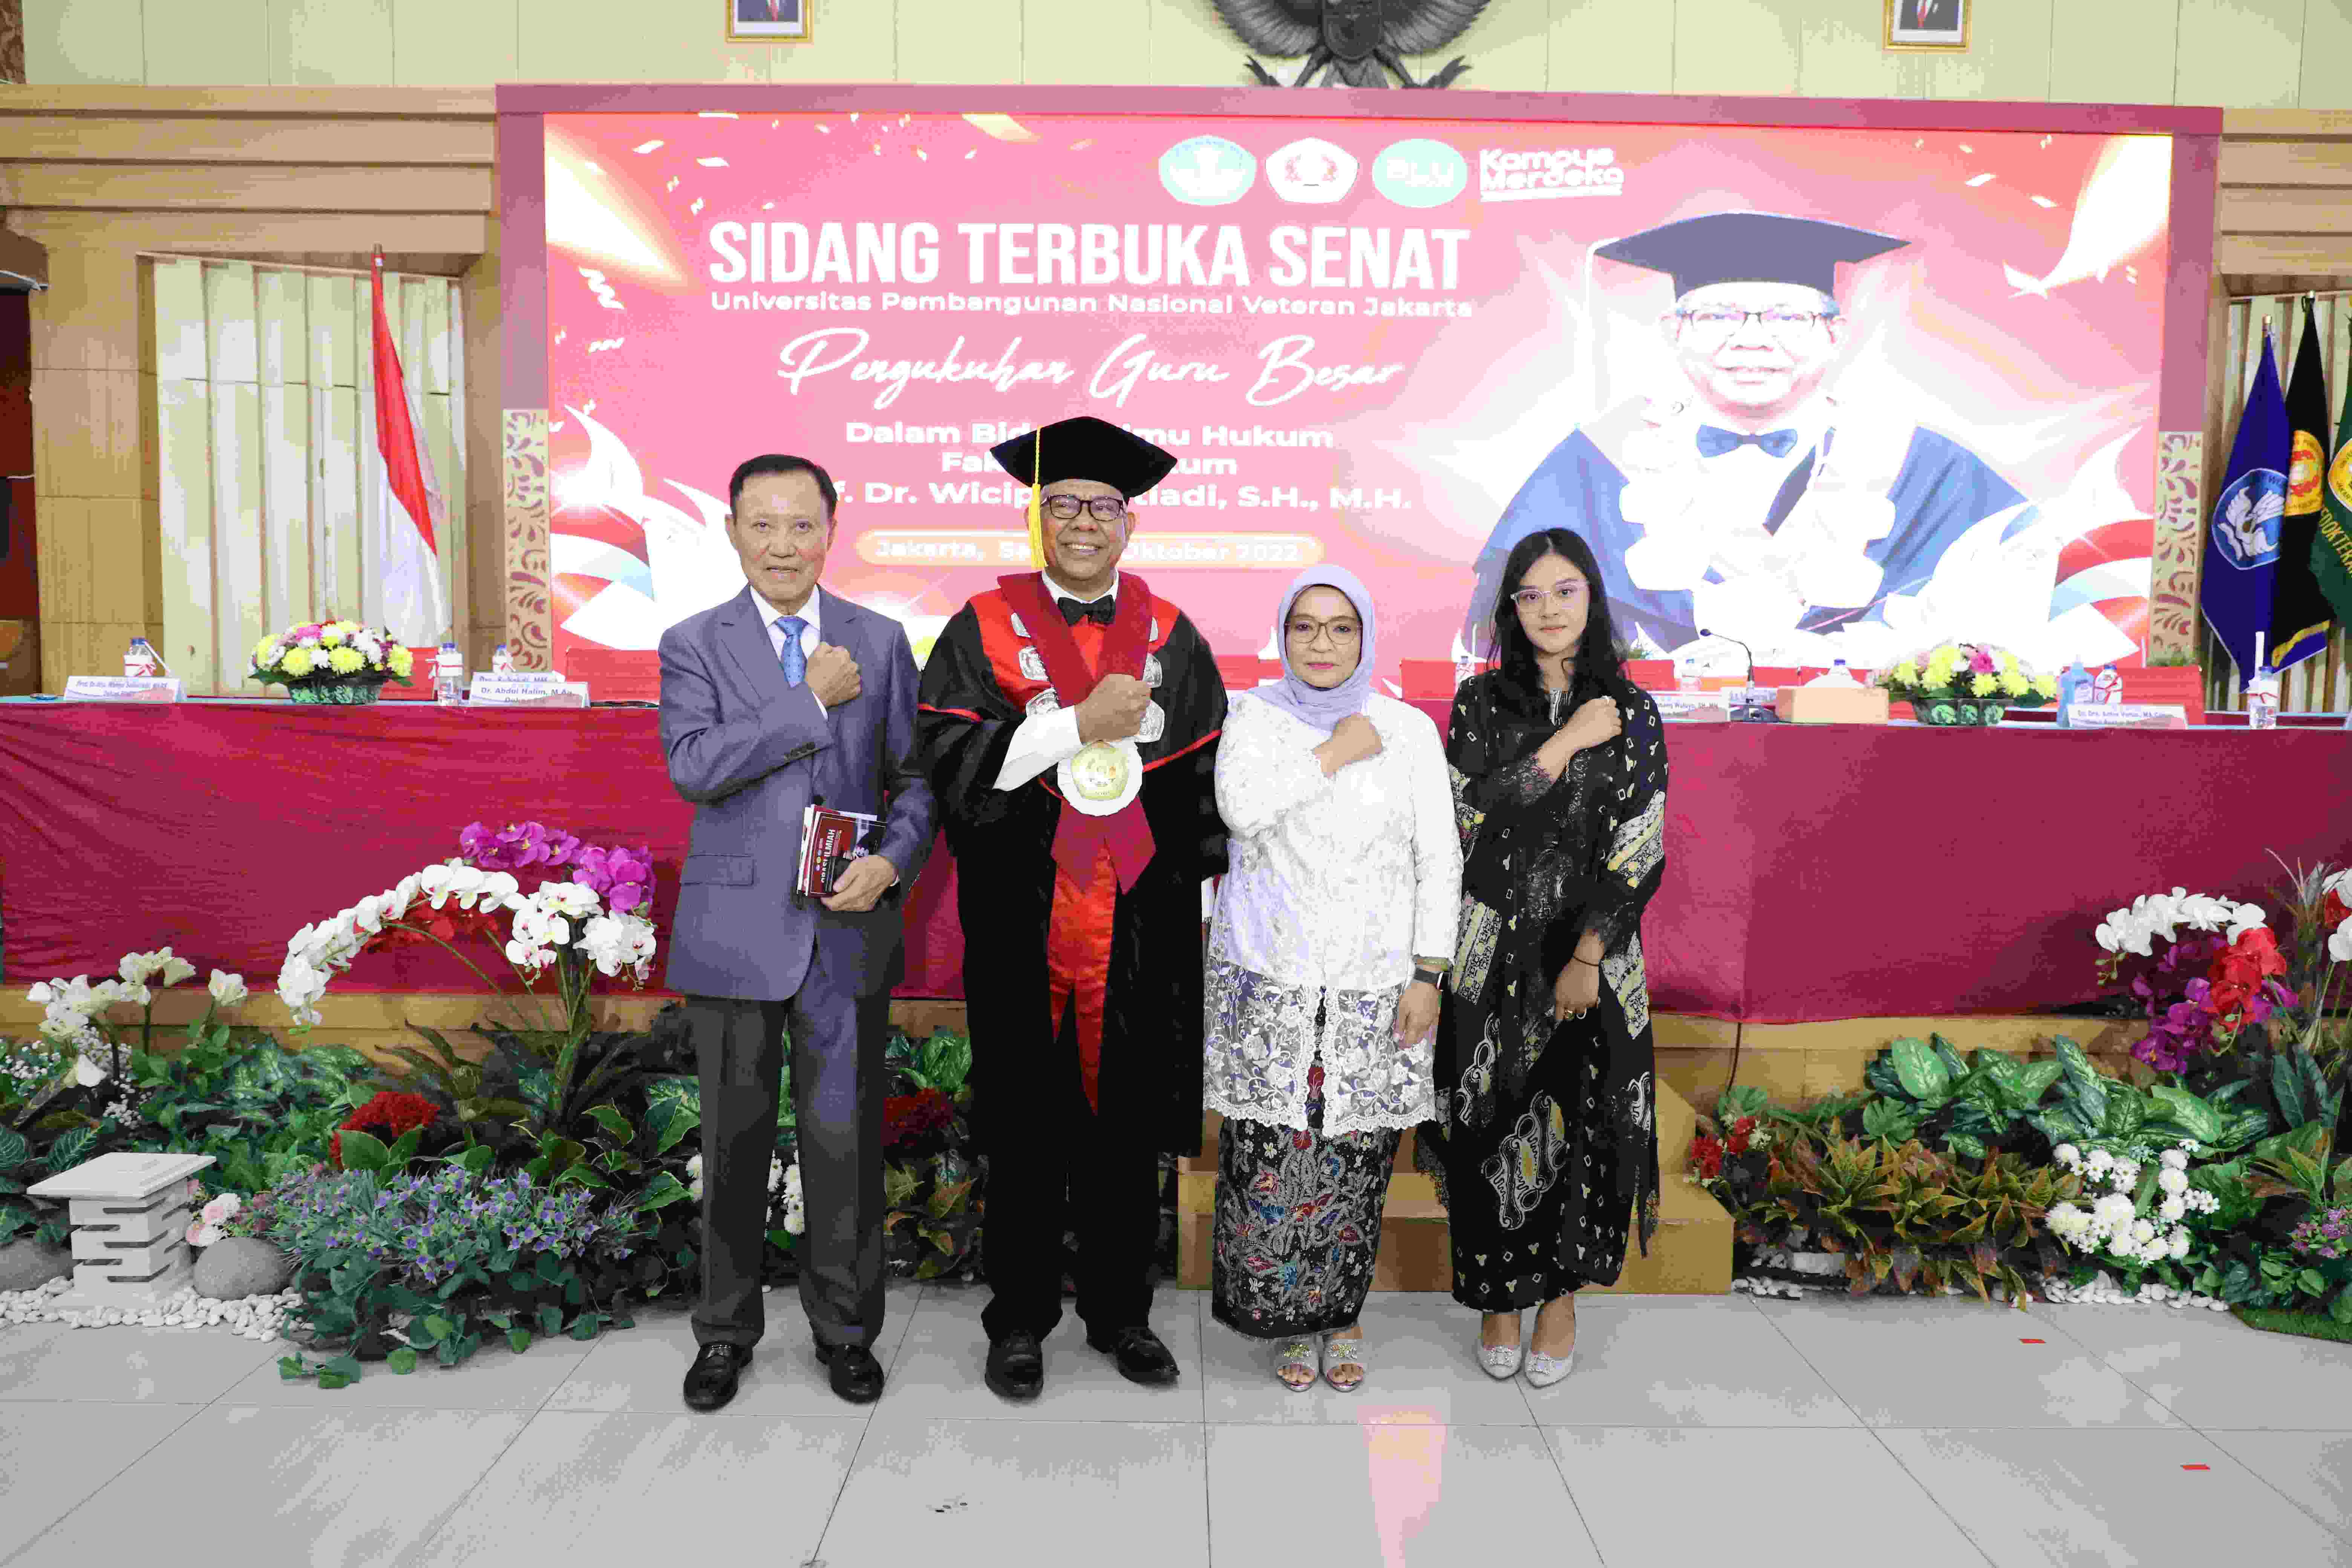 Pengukuhan Prof Dr Wicipto Setiadi SH MH Guru Besar bidang Ilmu Hukum Fakultas Hukum Universitas Pembangunan Nasional Veteran Jakarta (23)